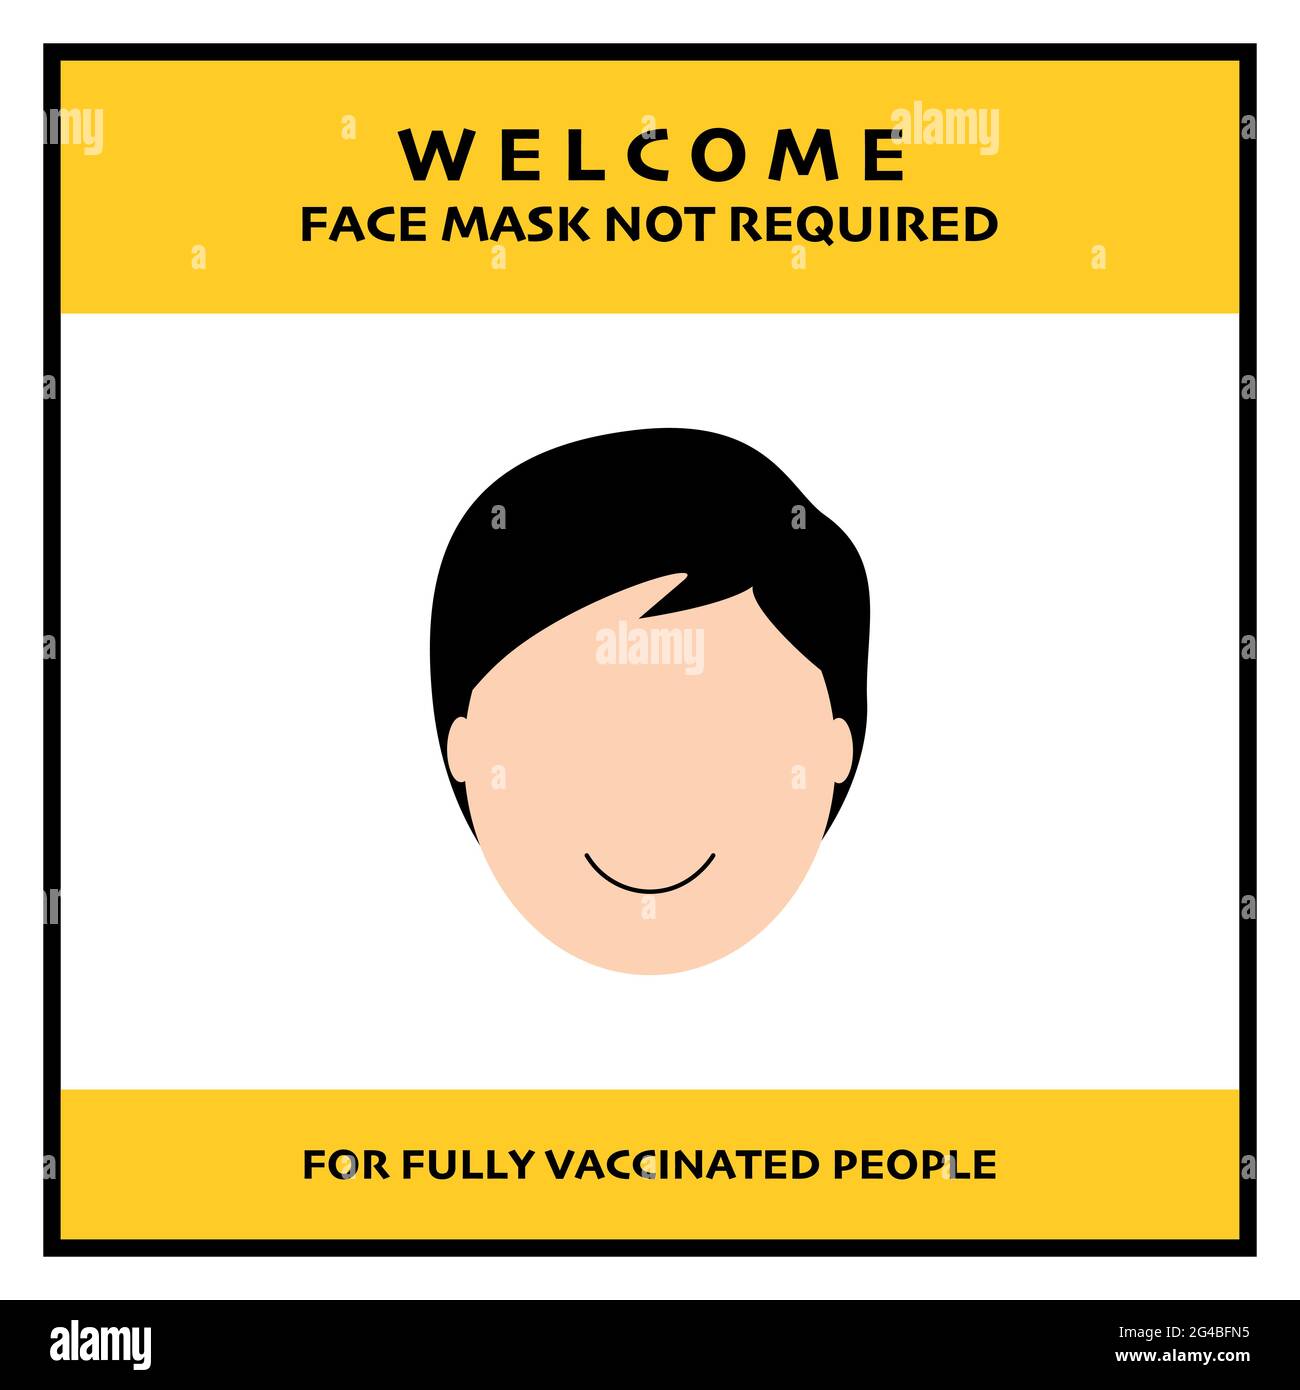 Masque facial non requis pour les personnes vaccinées entièrement covid-19 bannière. Illustration vectorielle de personnes souriant sans masque. Illustration de Vecteur